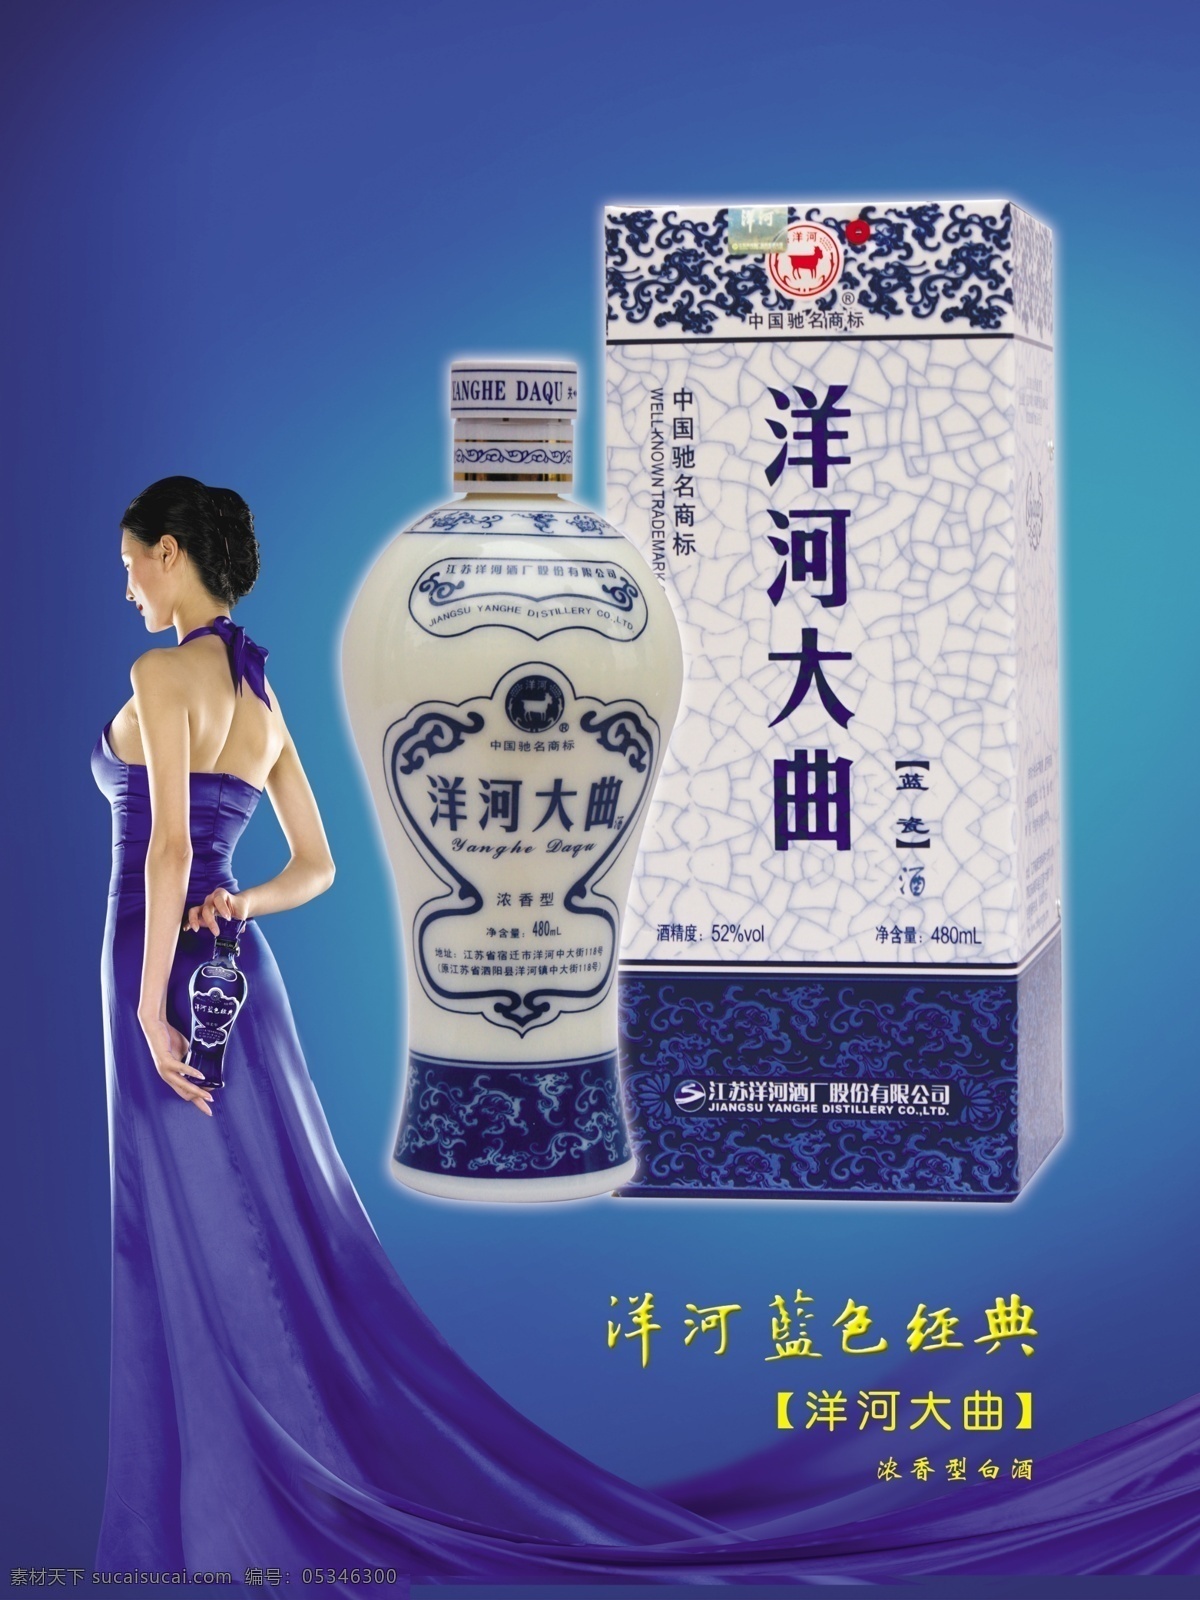 洋河大曲 洋河蓝色经典 酒瓶 蓝色背景 美女 酒瓶展示牌 ps素材 广告设计模板 源文件